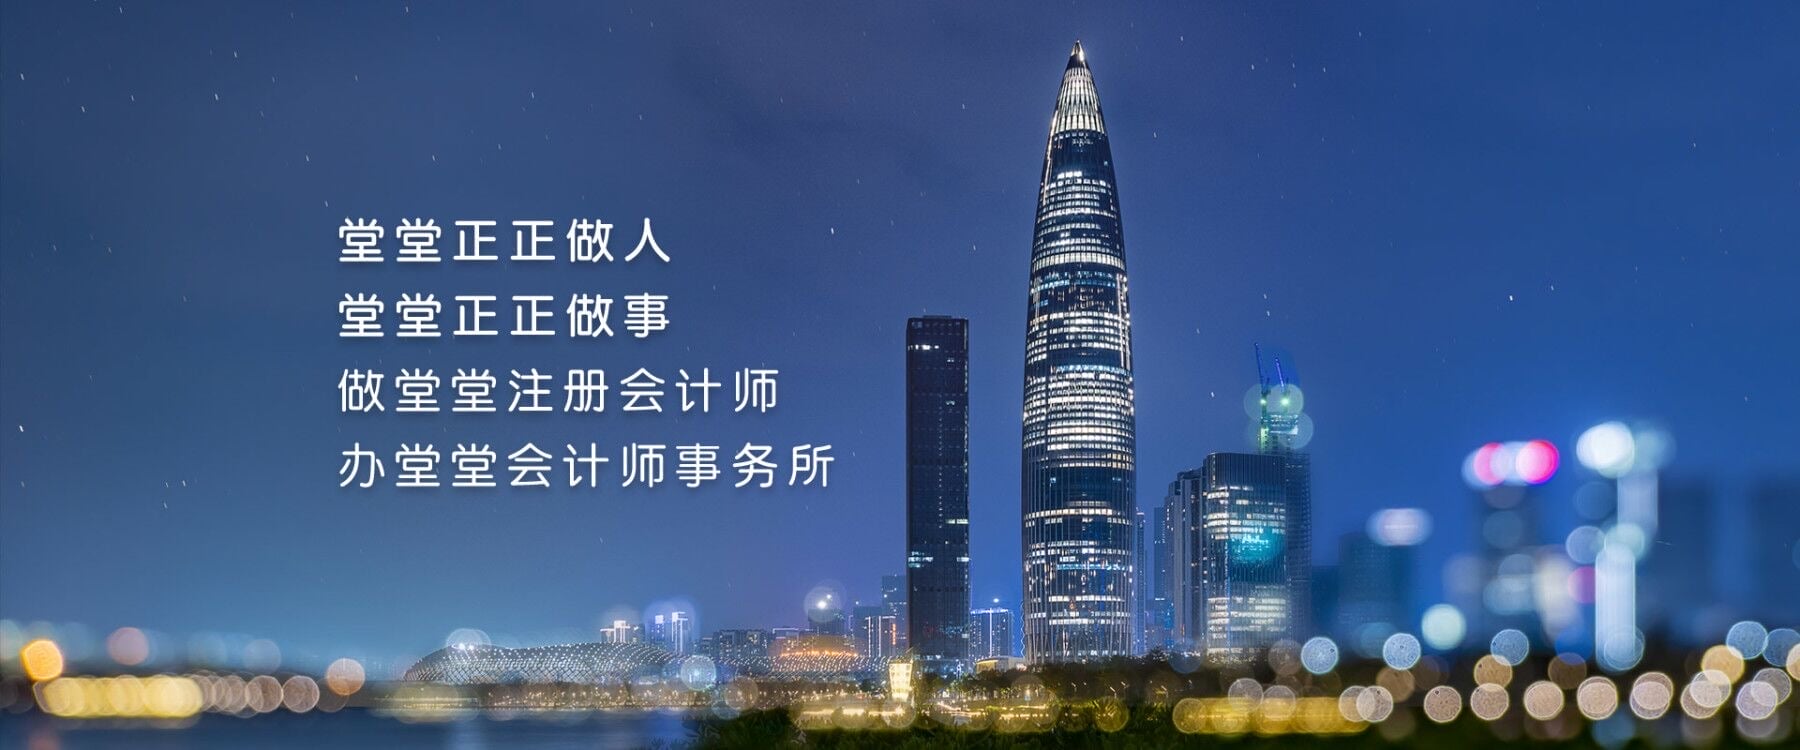 深圳堂堂会计师事务所面向全国诚邀50家成员所加盟发展